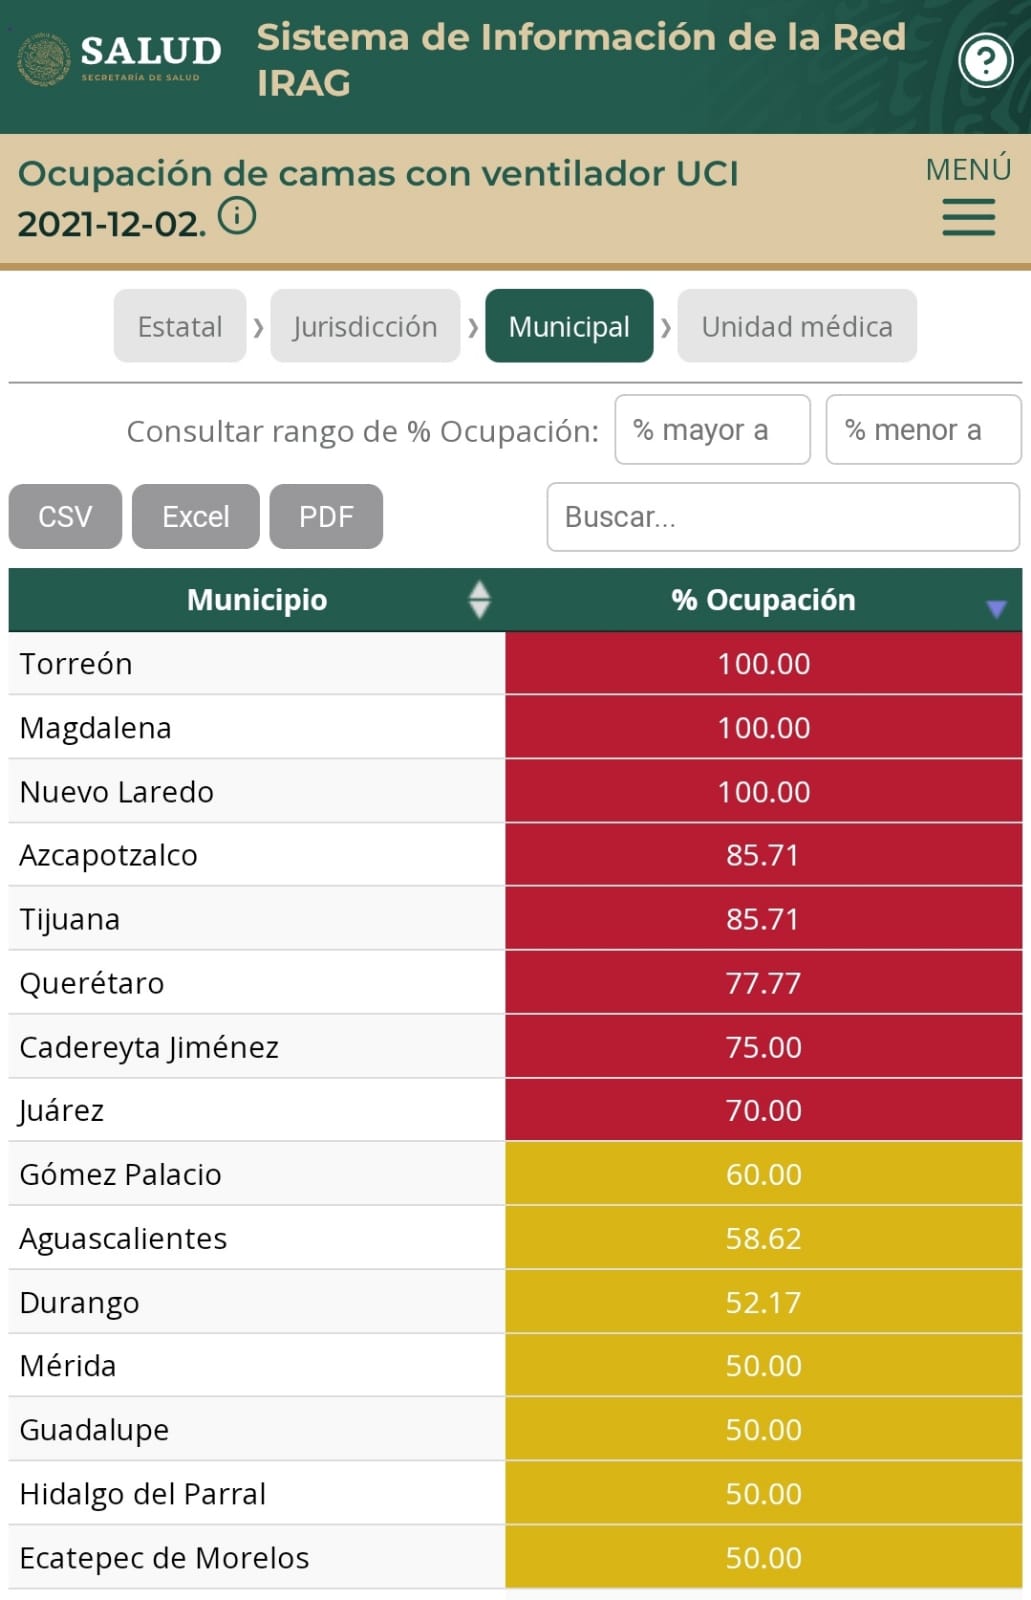 Tehuacán, Izúcar y Huejotzingo, entre los municipios del país con más carga hospitalaria